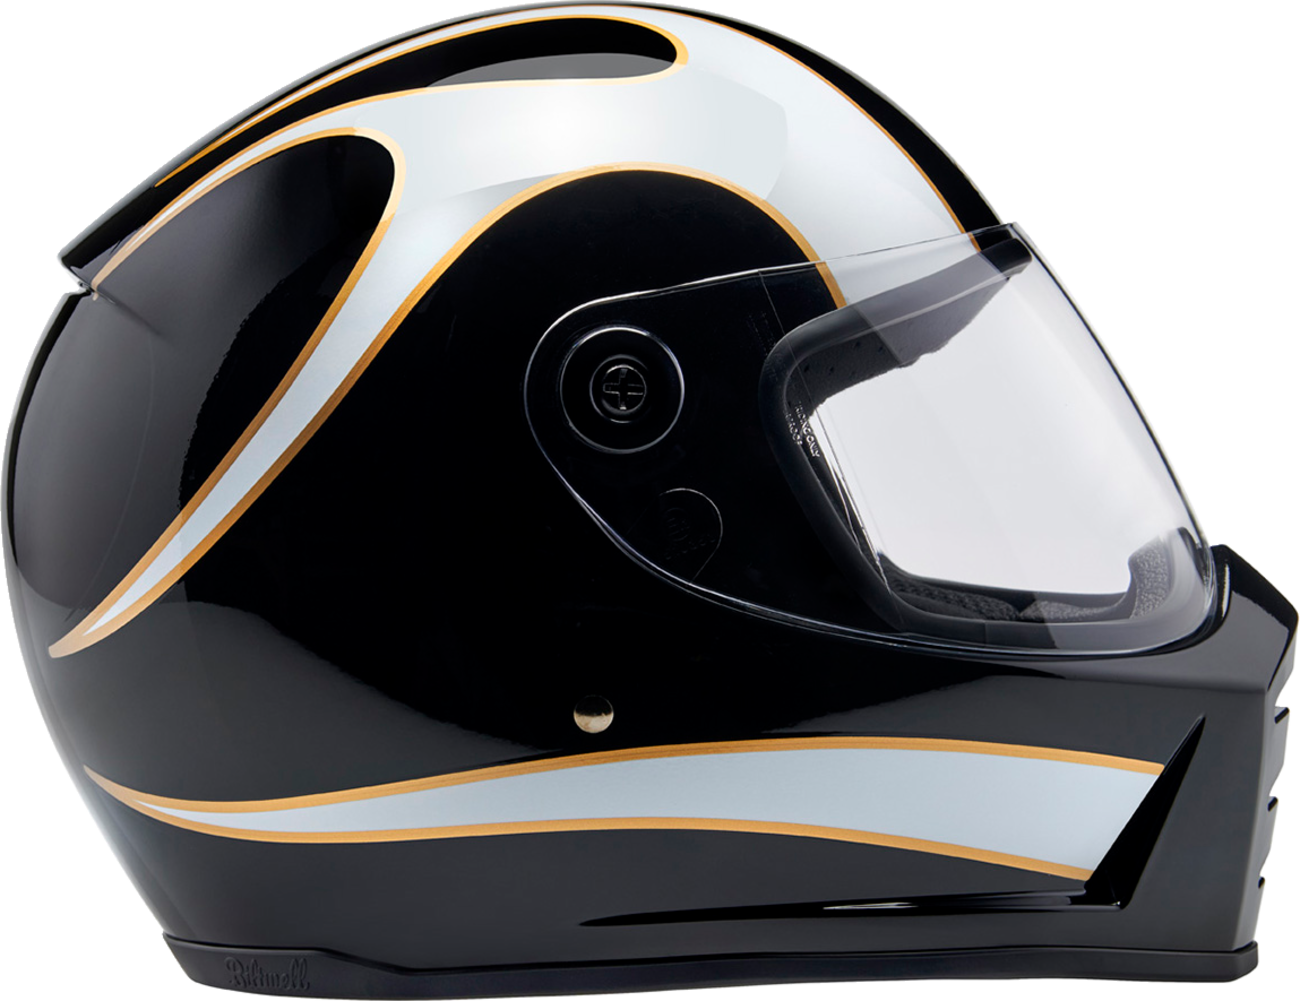 BILTWELL Lane Splitter Helmet - Gloss Black/White Flames - XL 1004-570-505